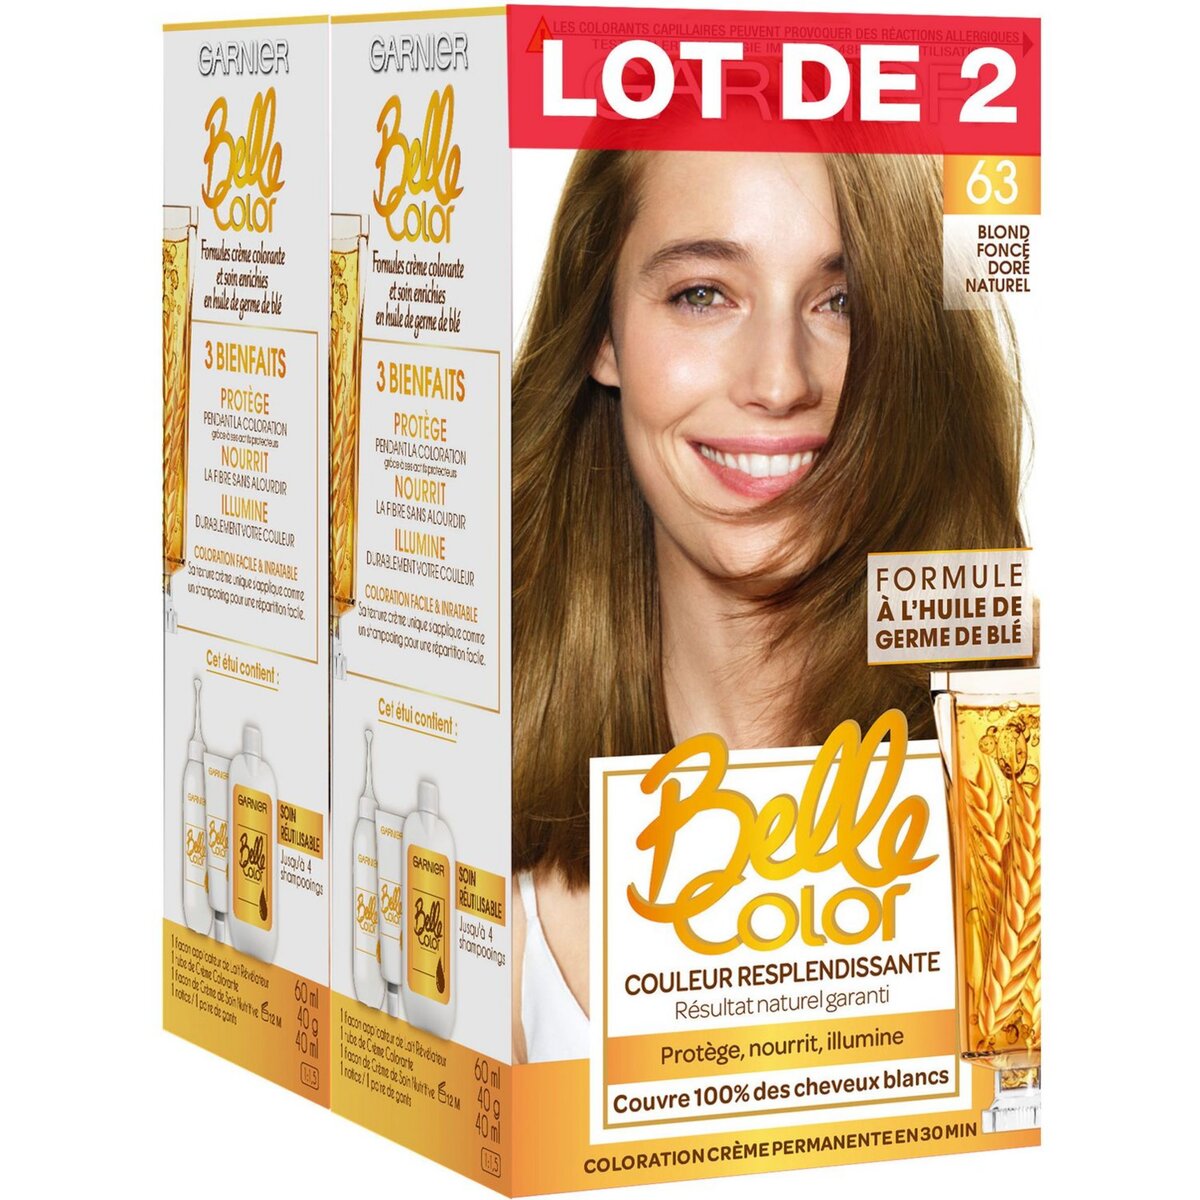 GARNIER Belle Color coloration permanente 63 blond foncé doré naturel 2x3 produits 2 kits